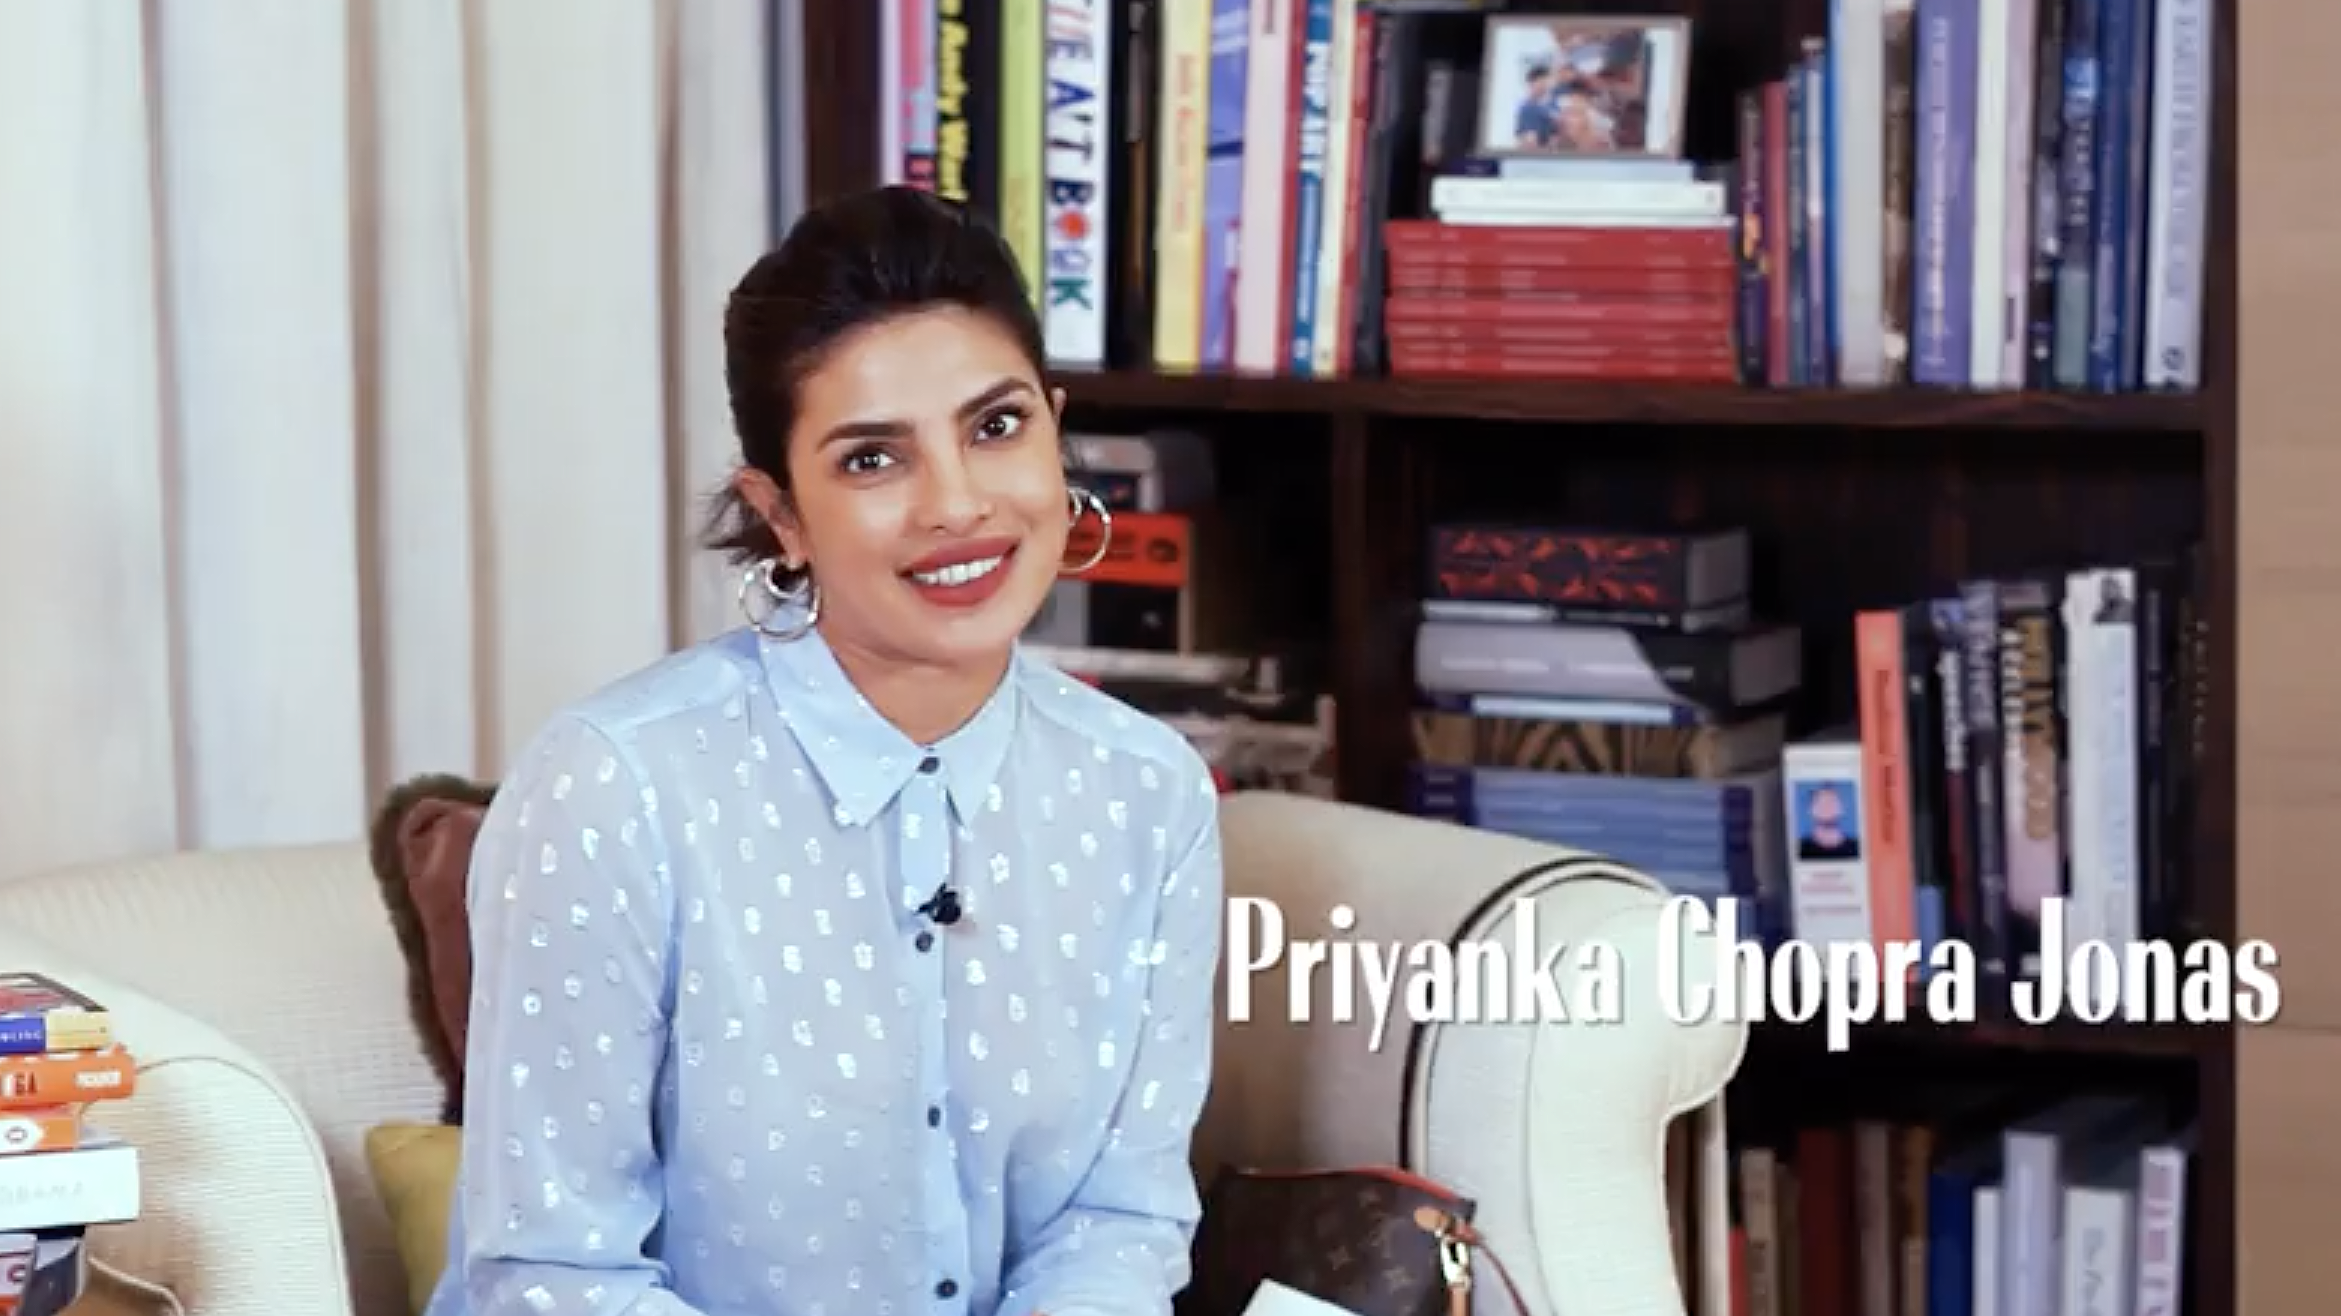 2341px x 1316px - Priyanka Chopra Jonas Reveals Her Favorite Books in MC's 'Shelf Portrait'  Series | Marie Claire